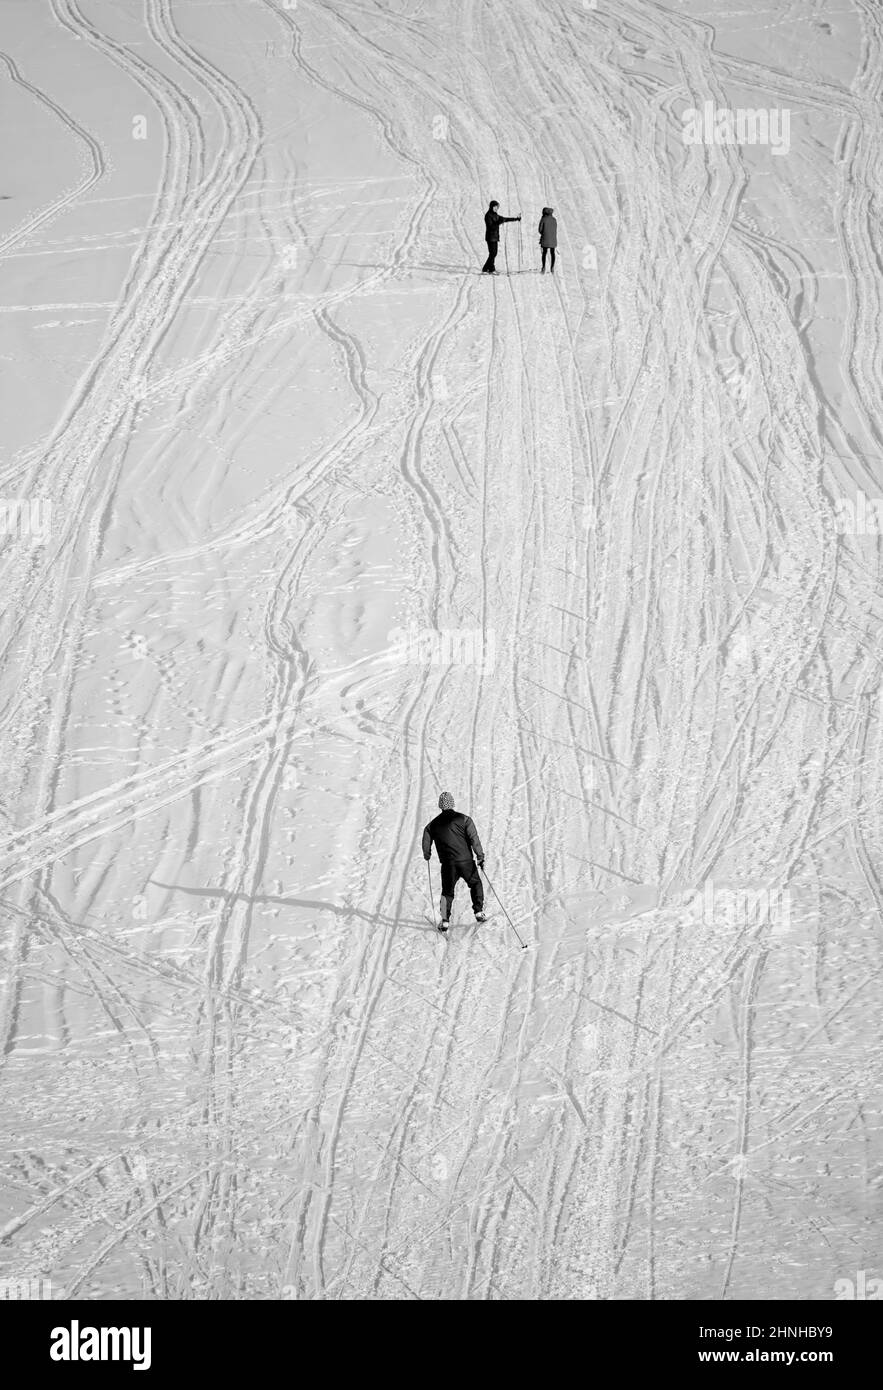 Les gens skier sur une pente de montagne Banque D'Images